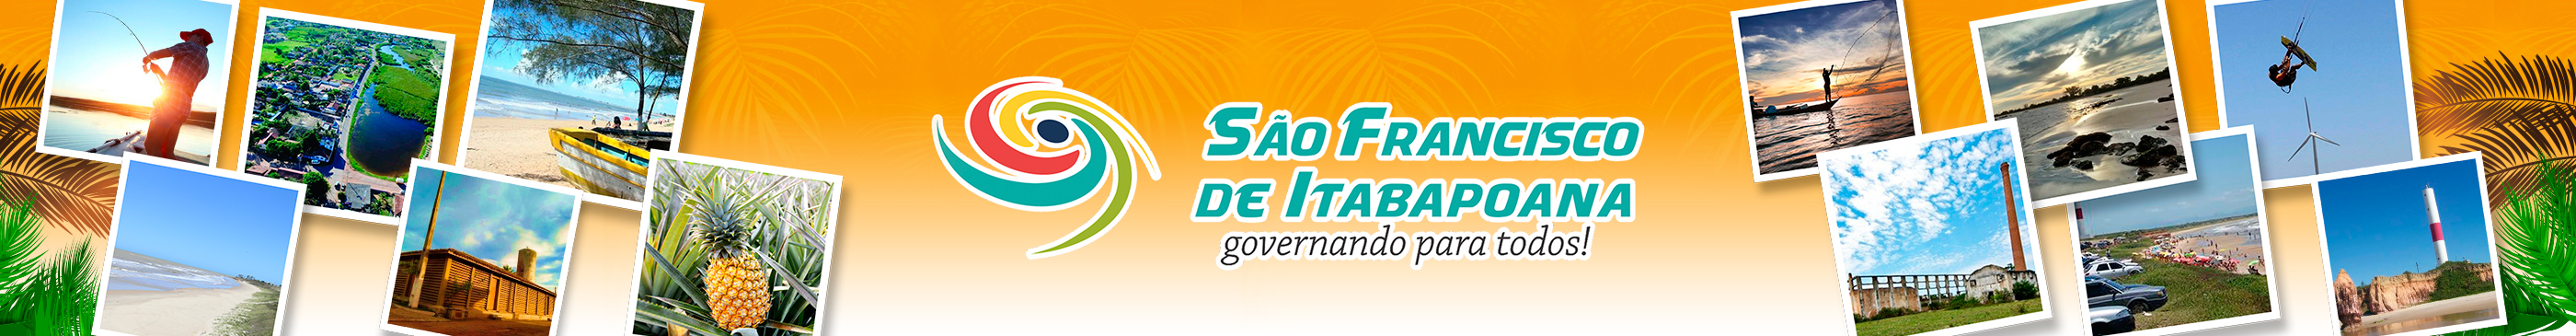 Prefeitura Municipal de São Francisco de Itabapoana